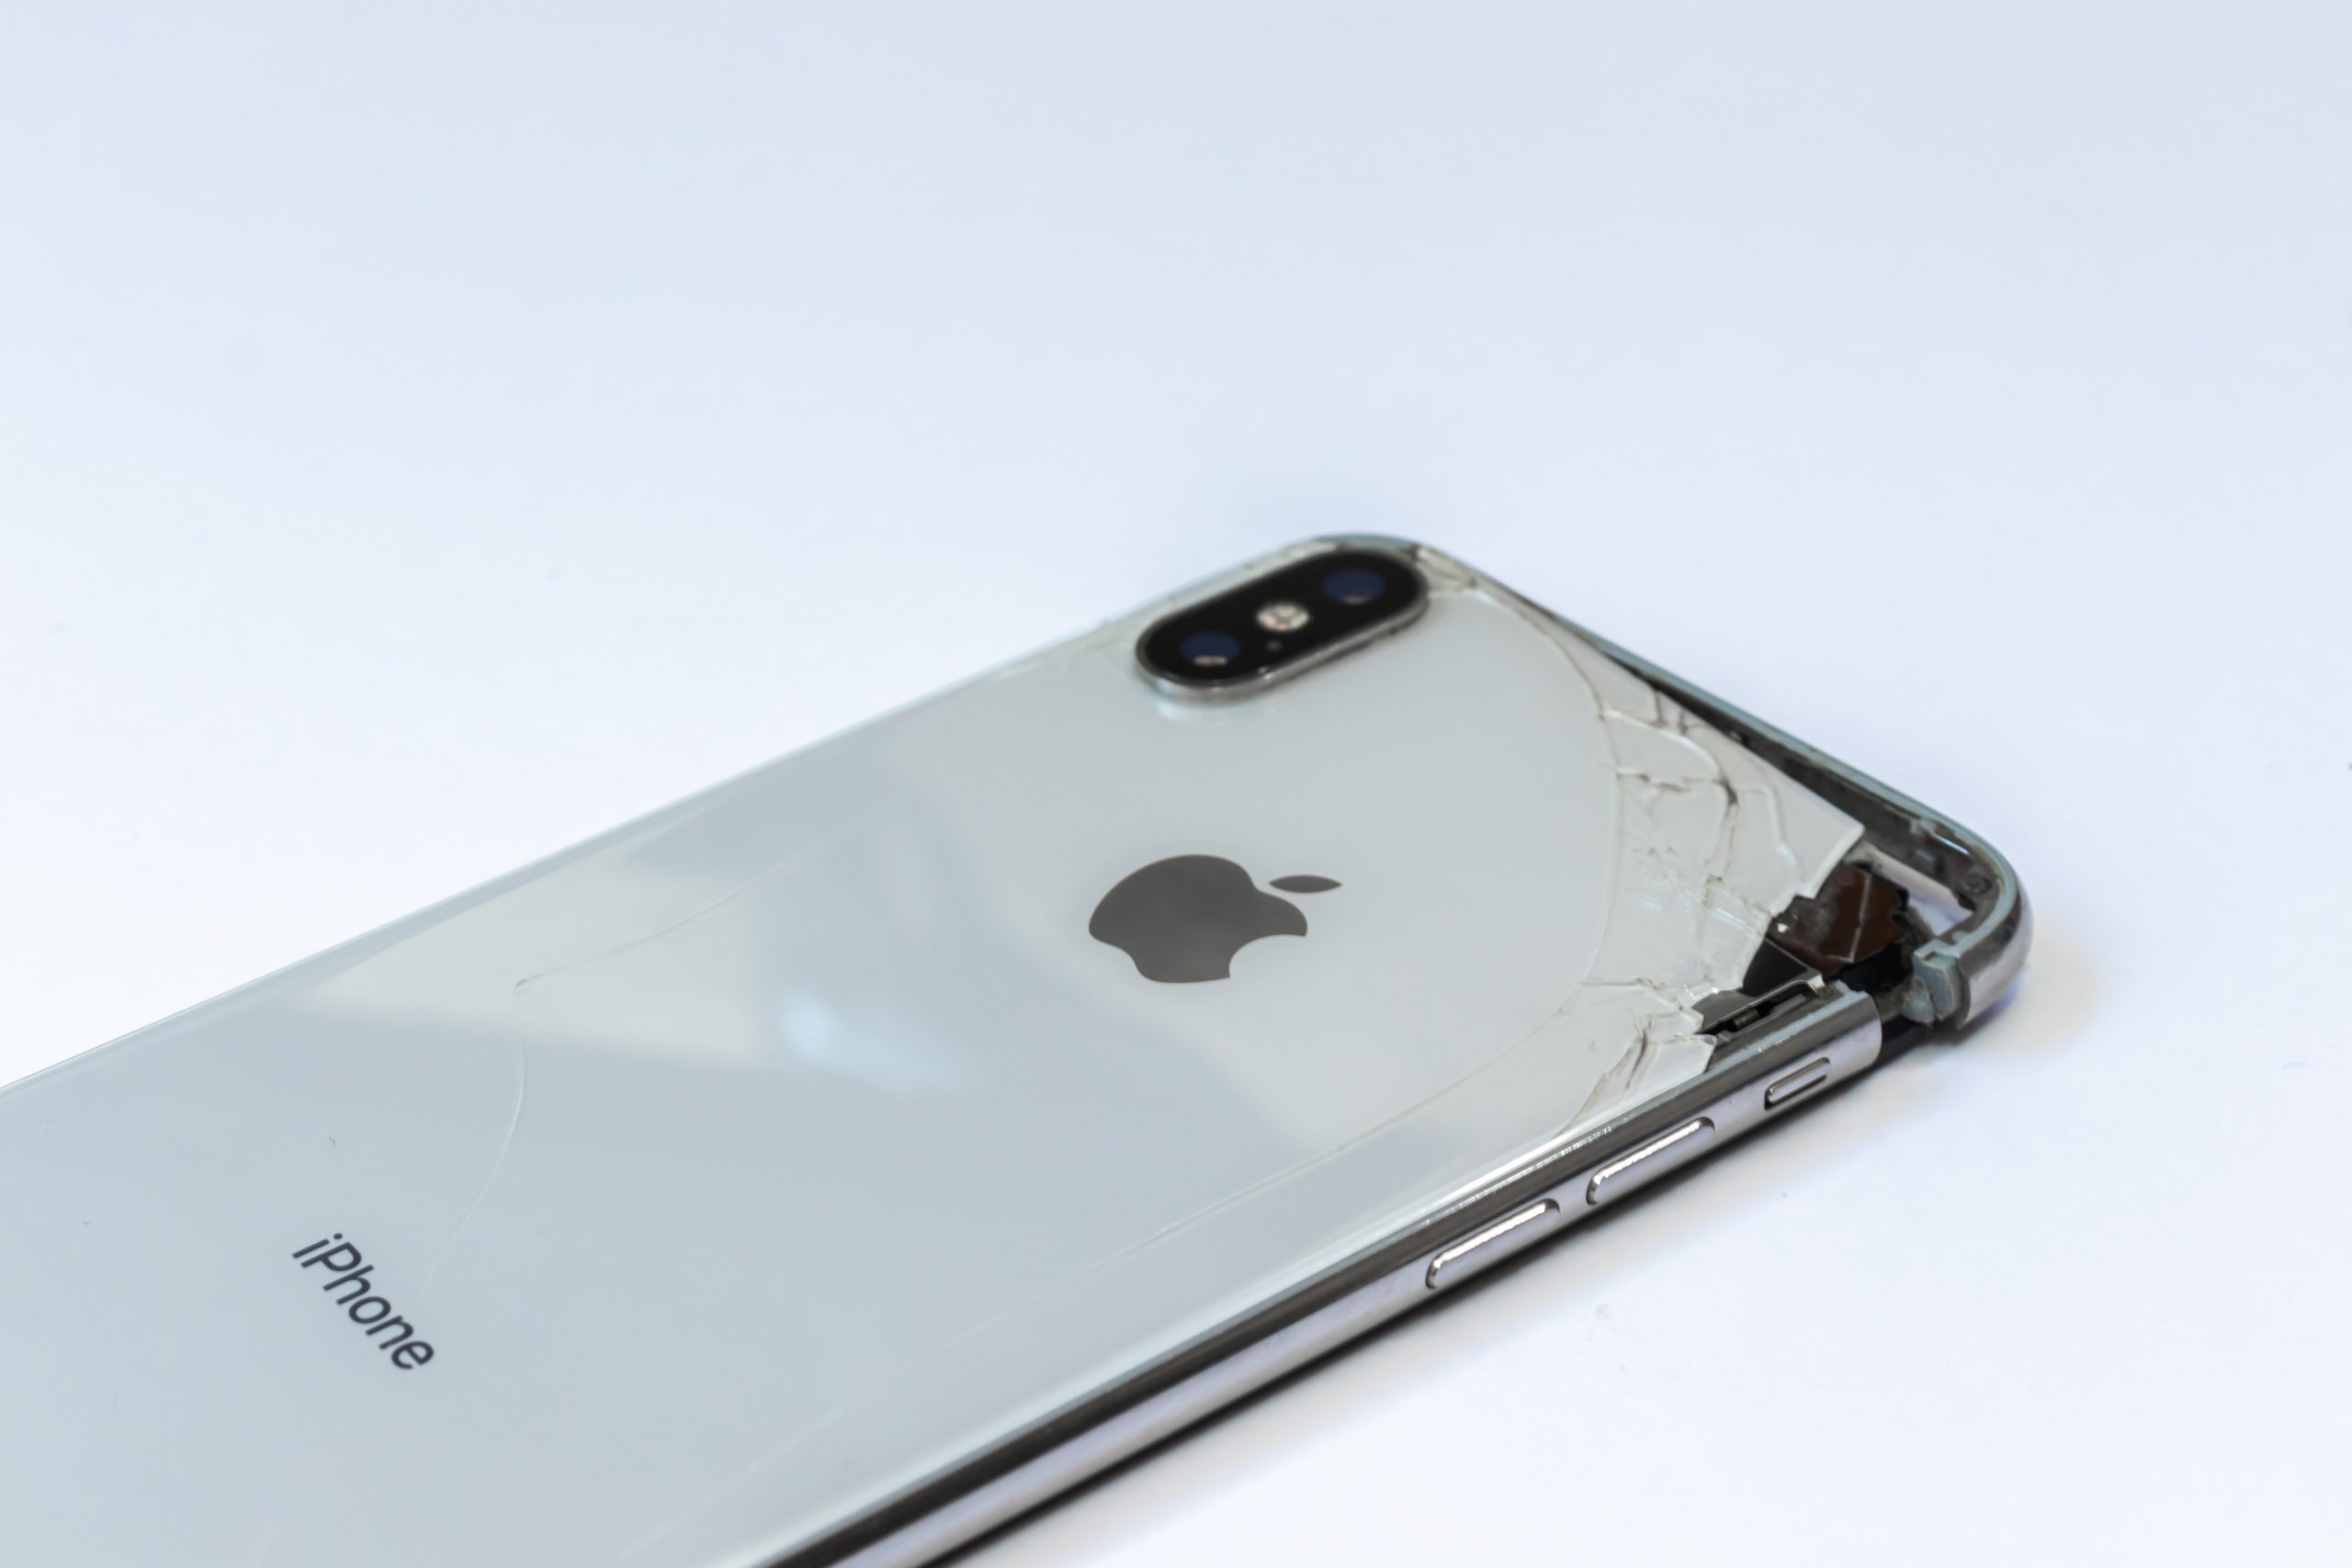 Do iPhone screen repairs work